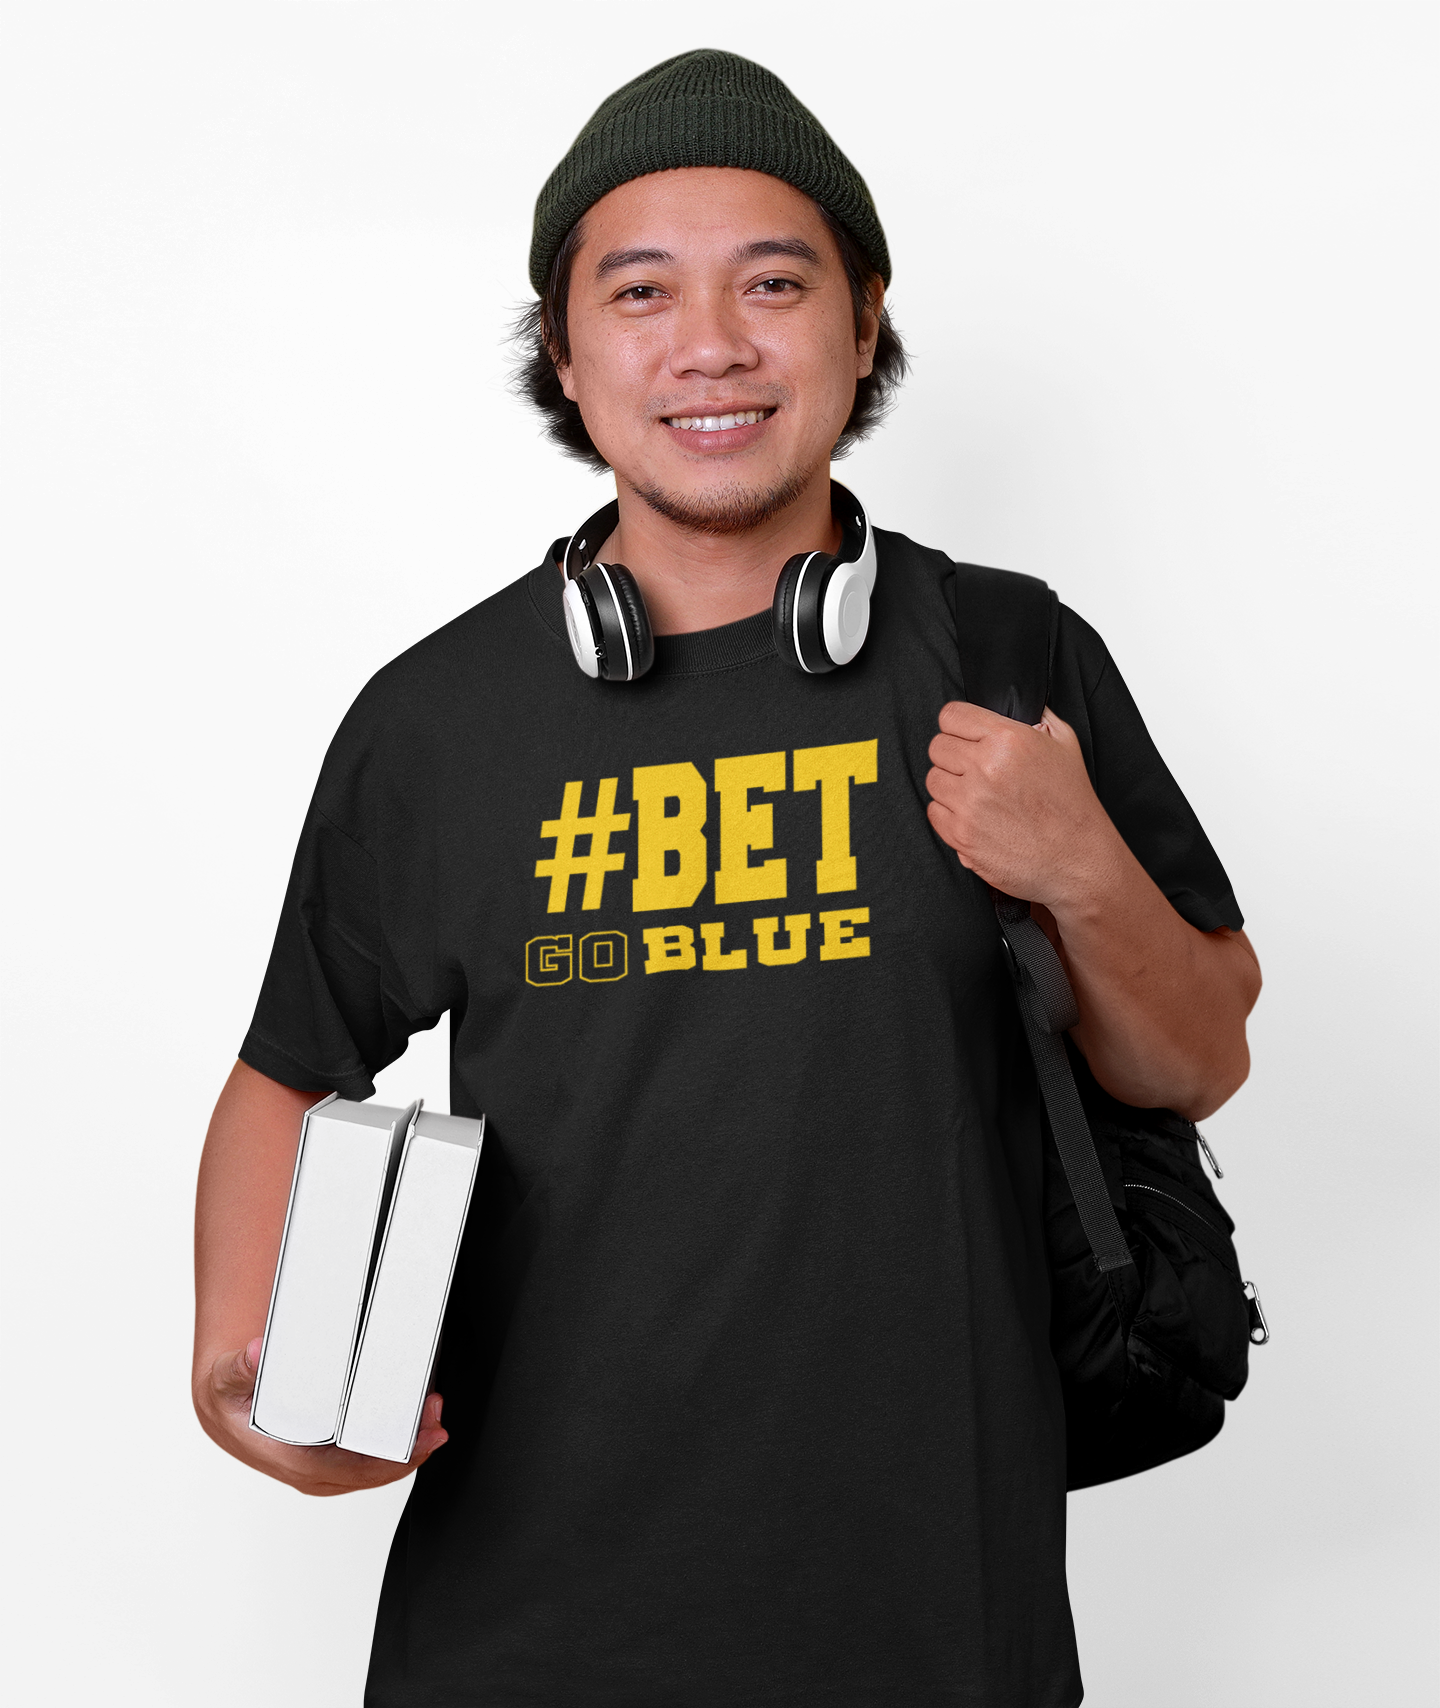 Bet Michigan T-shirt | Bet Blue Tee